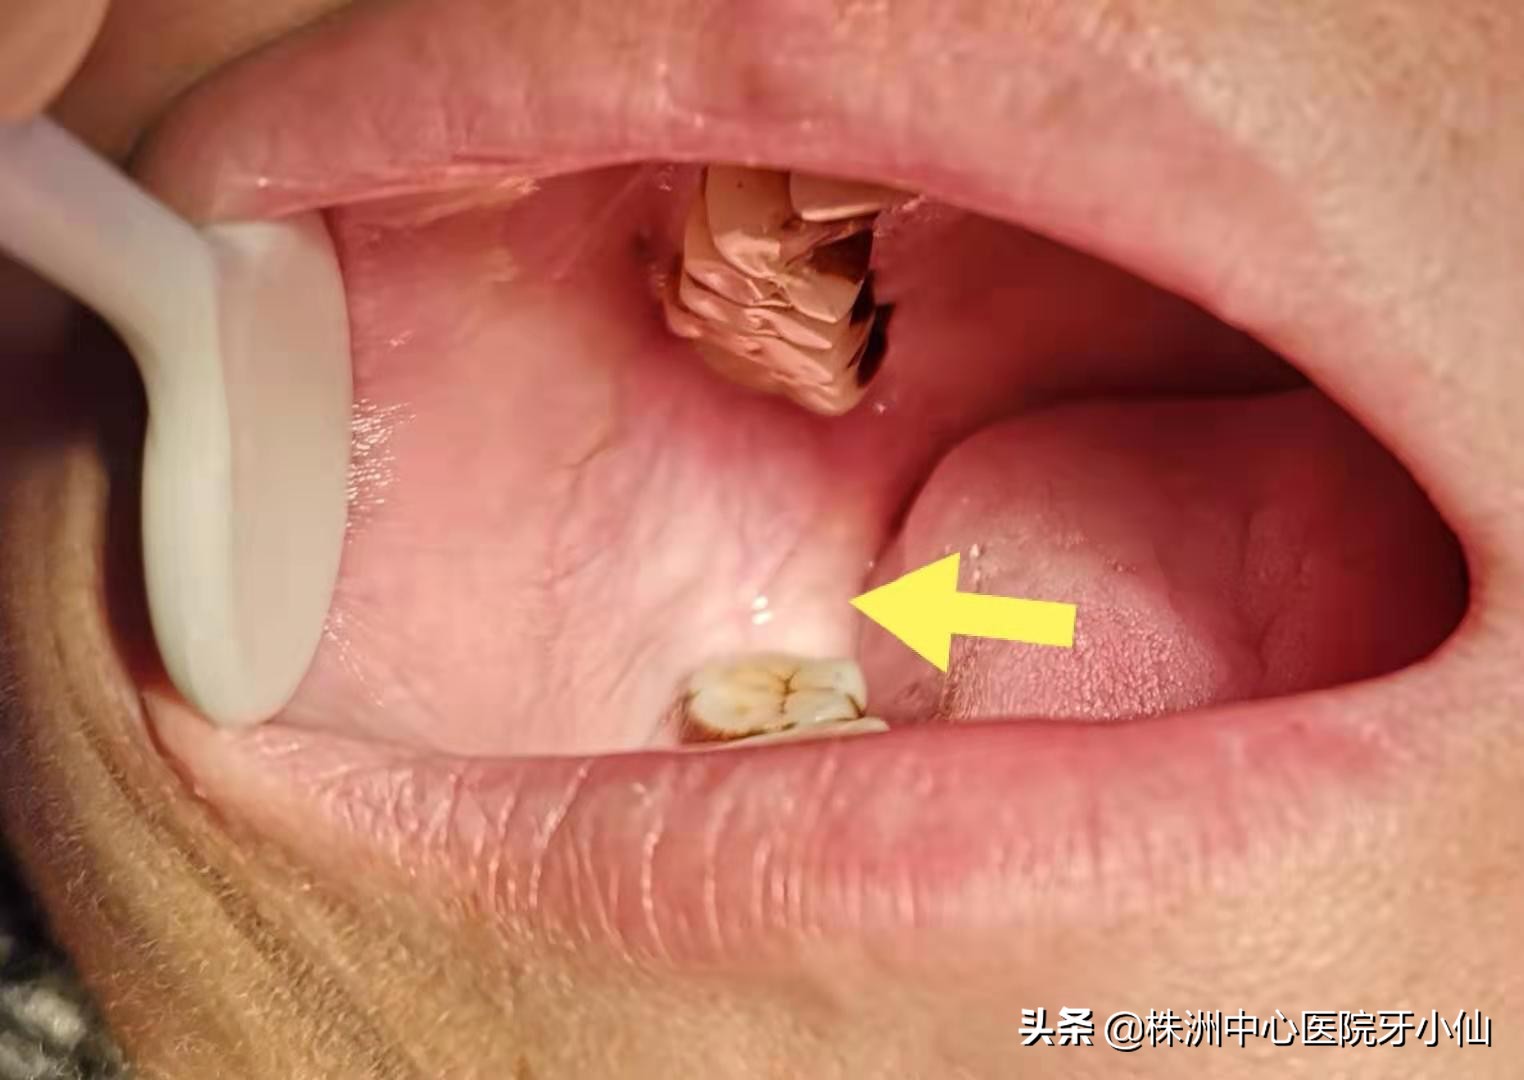 口腔真菌感染症状图片